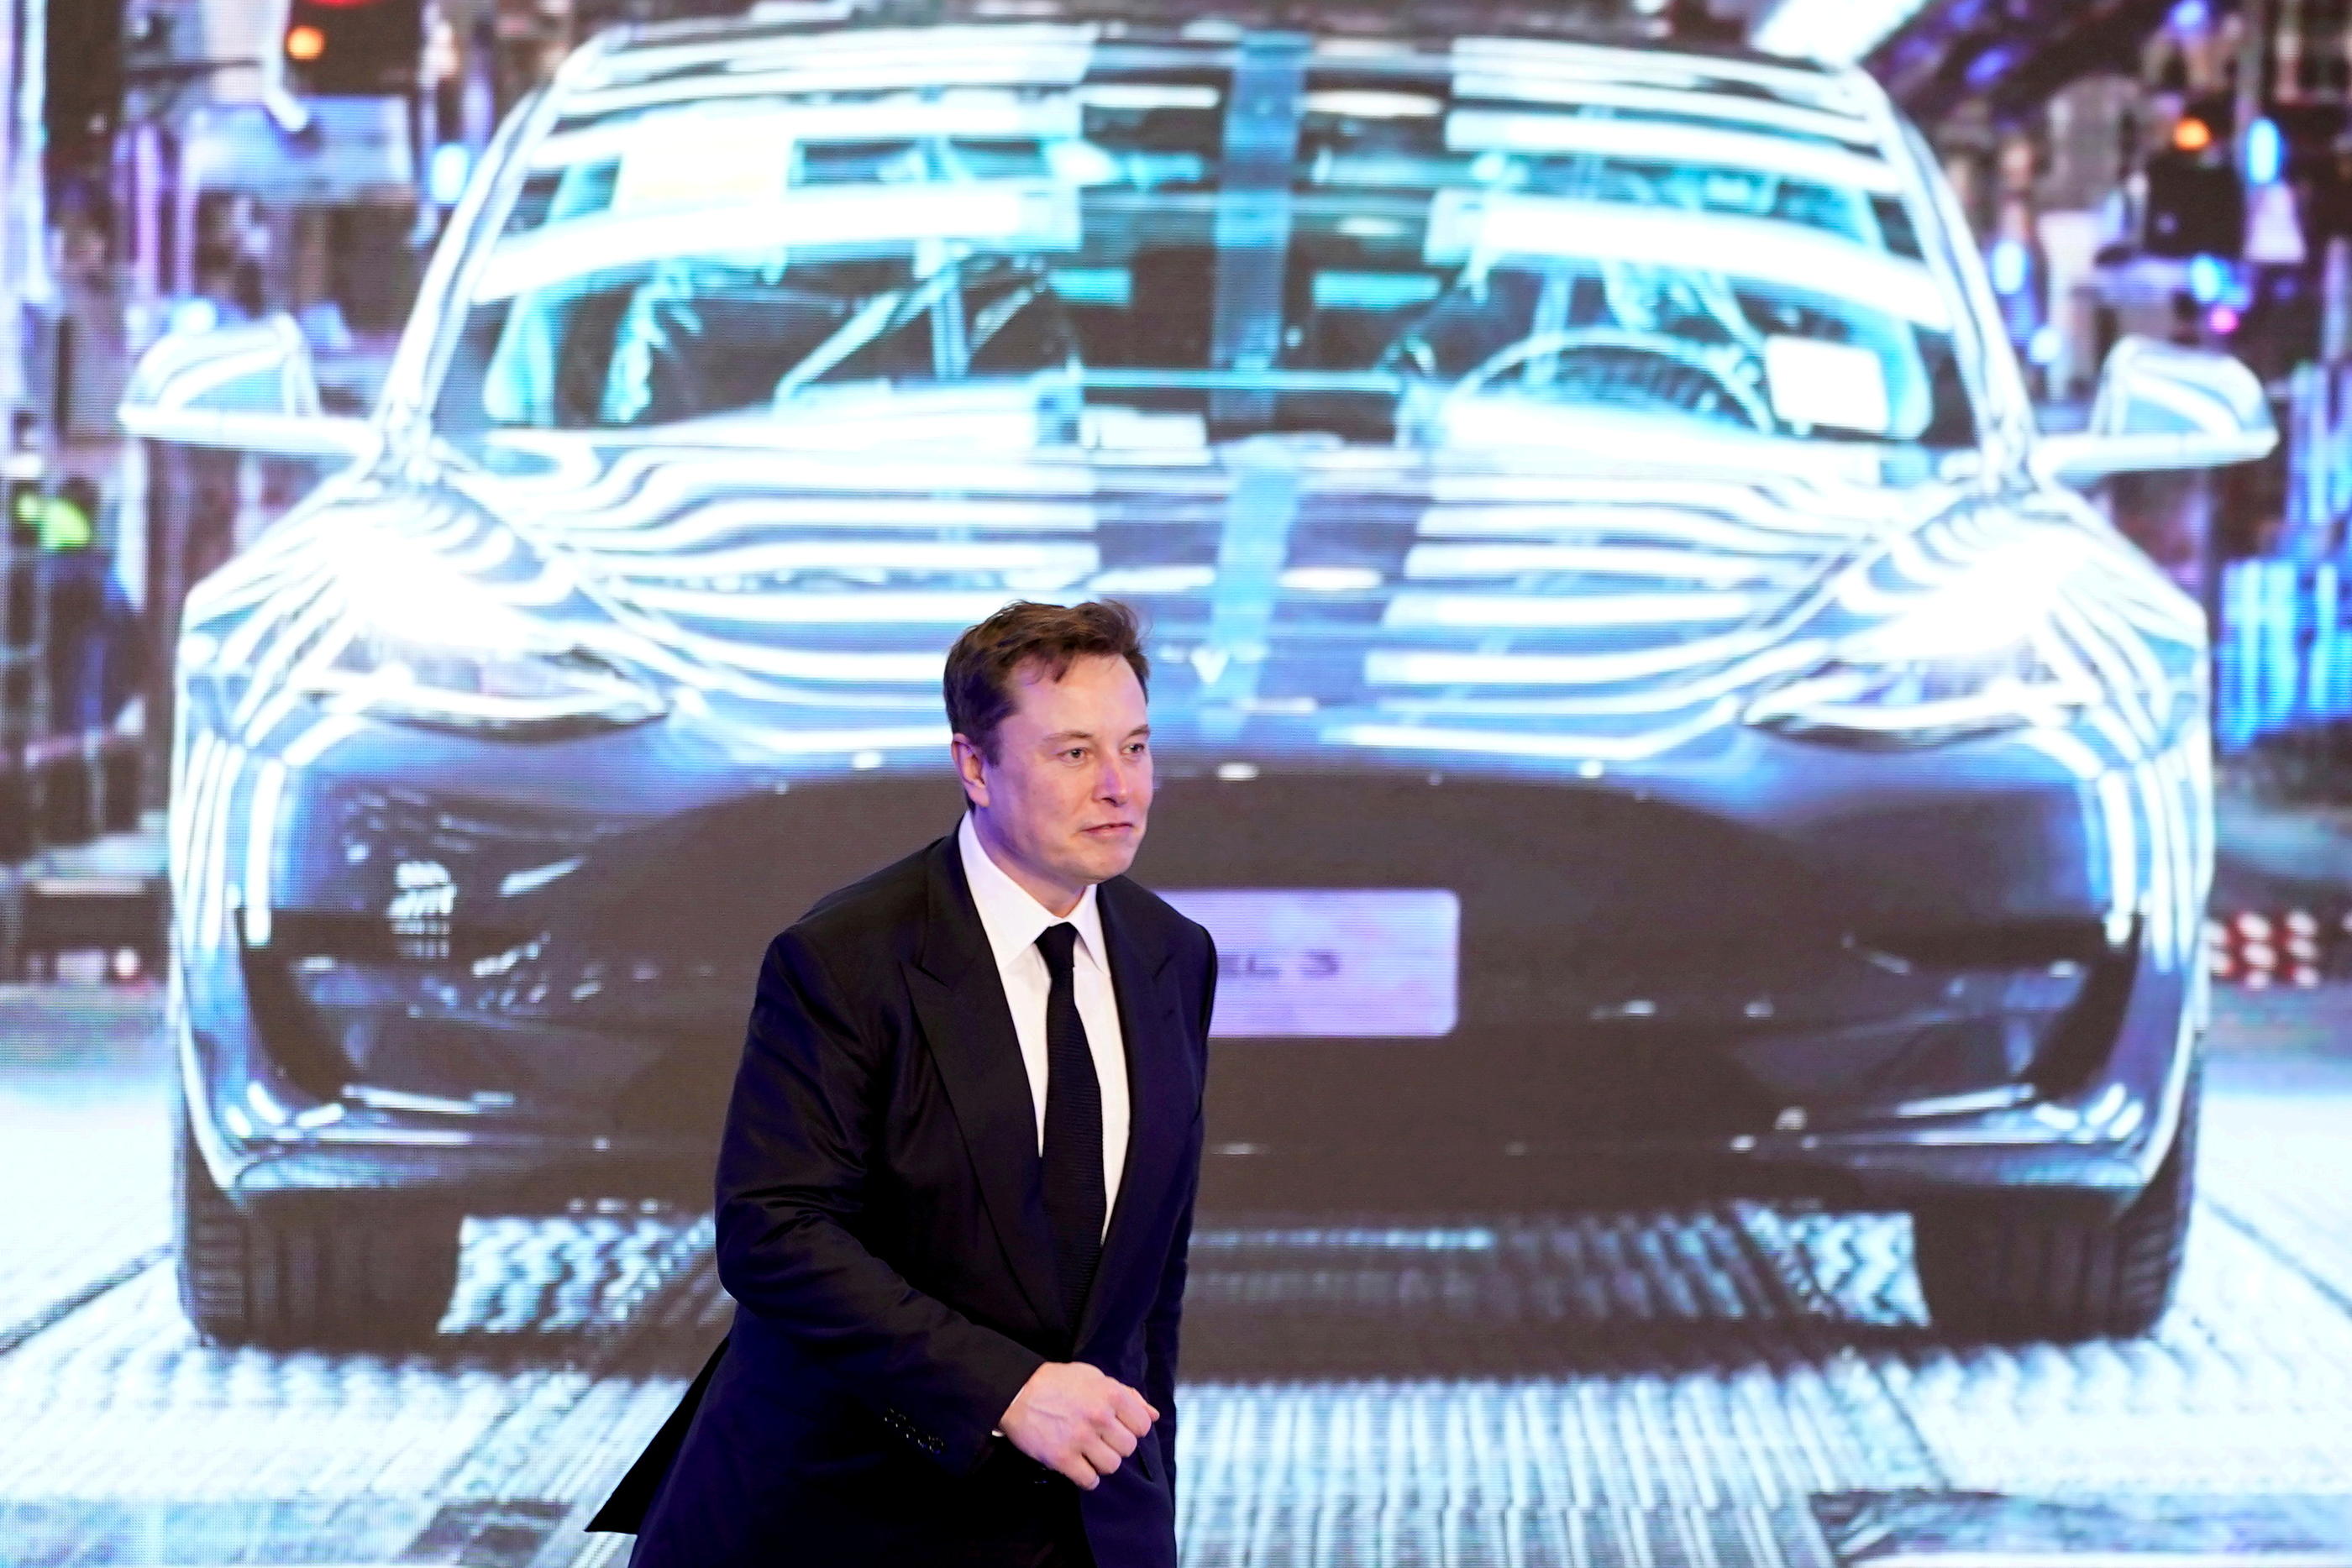 La Tesla Model Y est la voiture neuve la plus achetée par les Européens  devant la